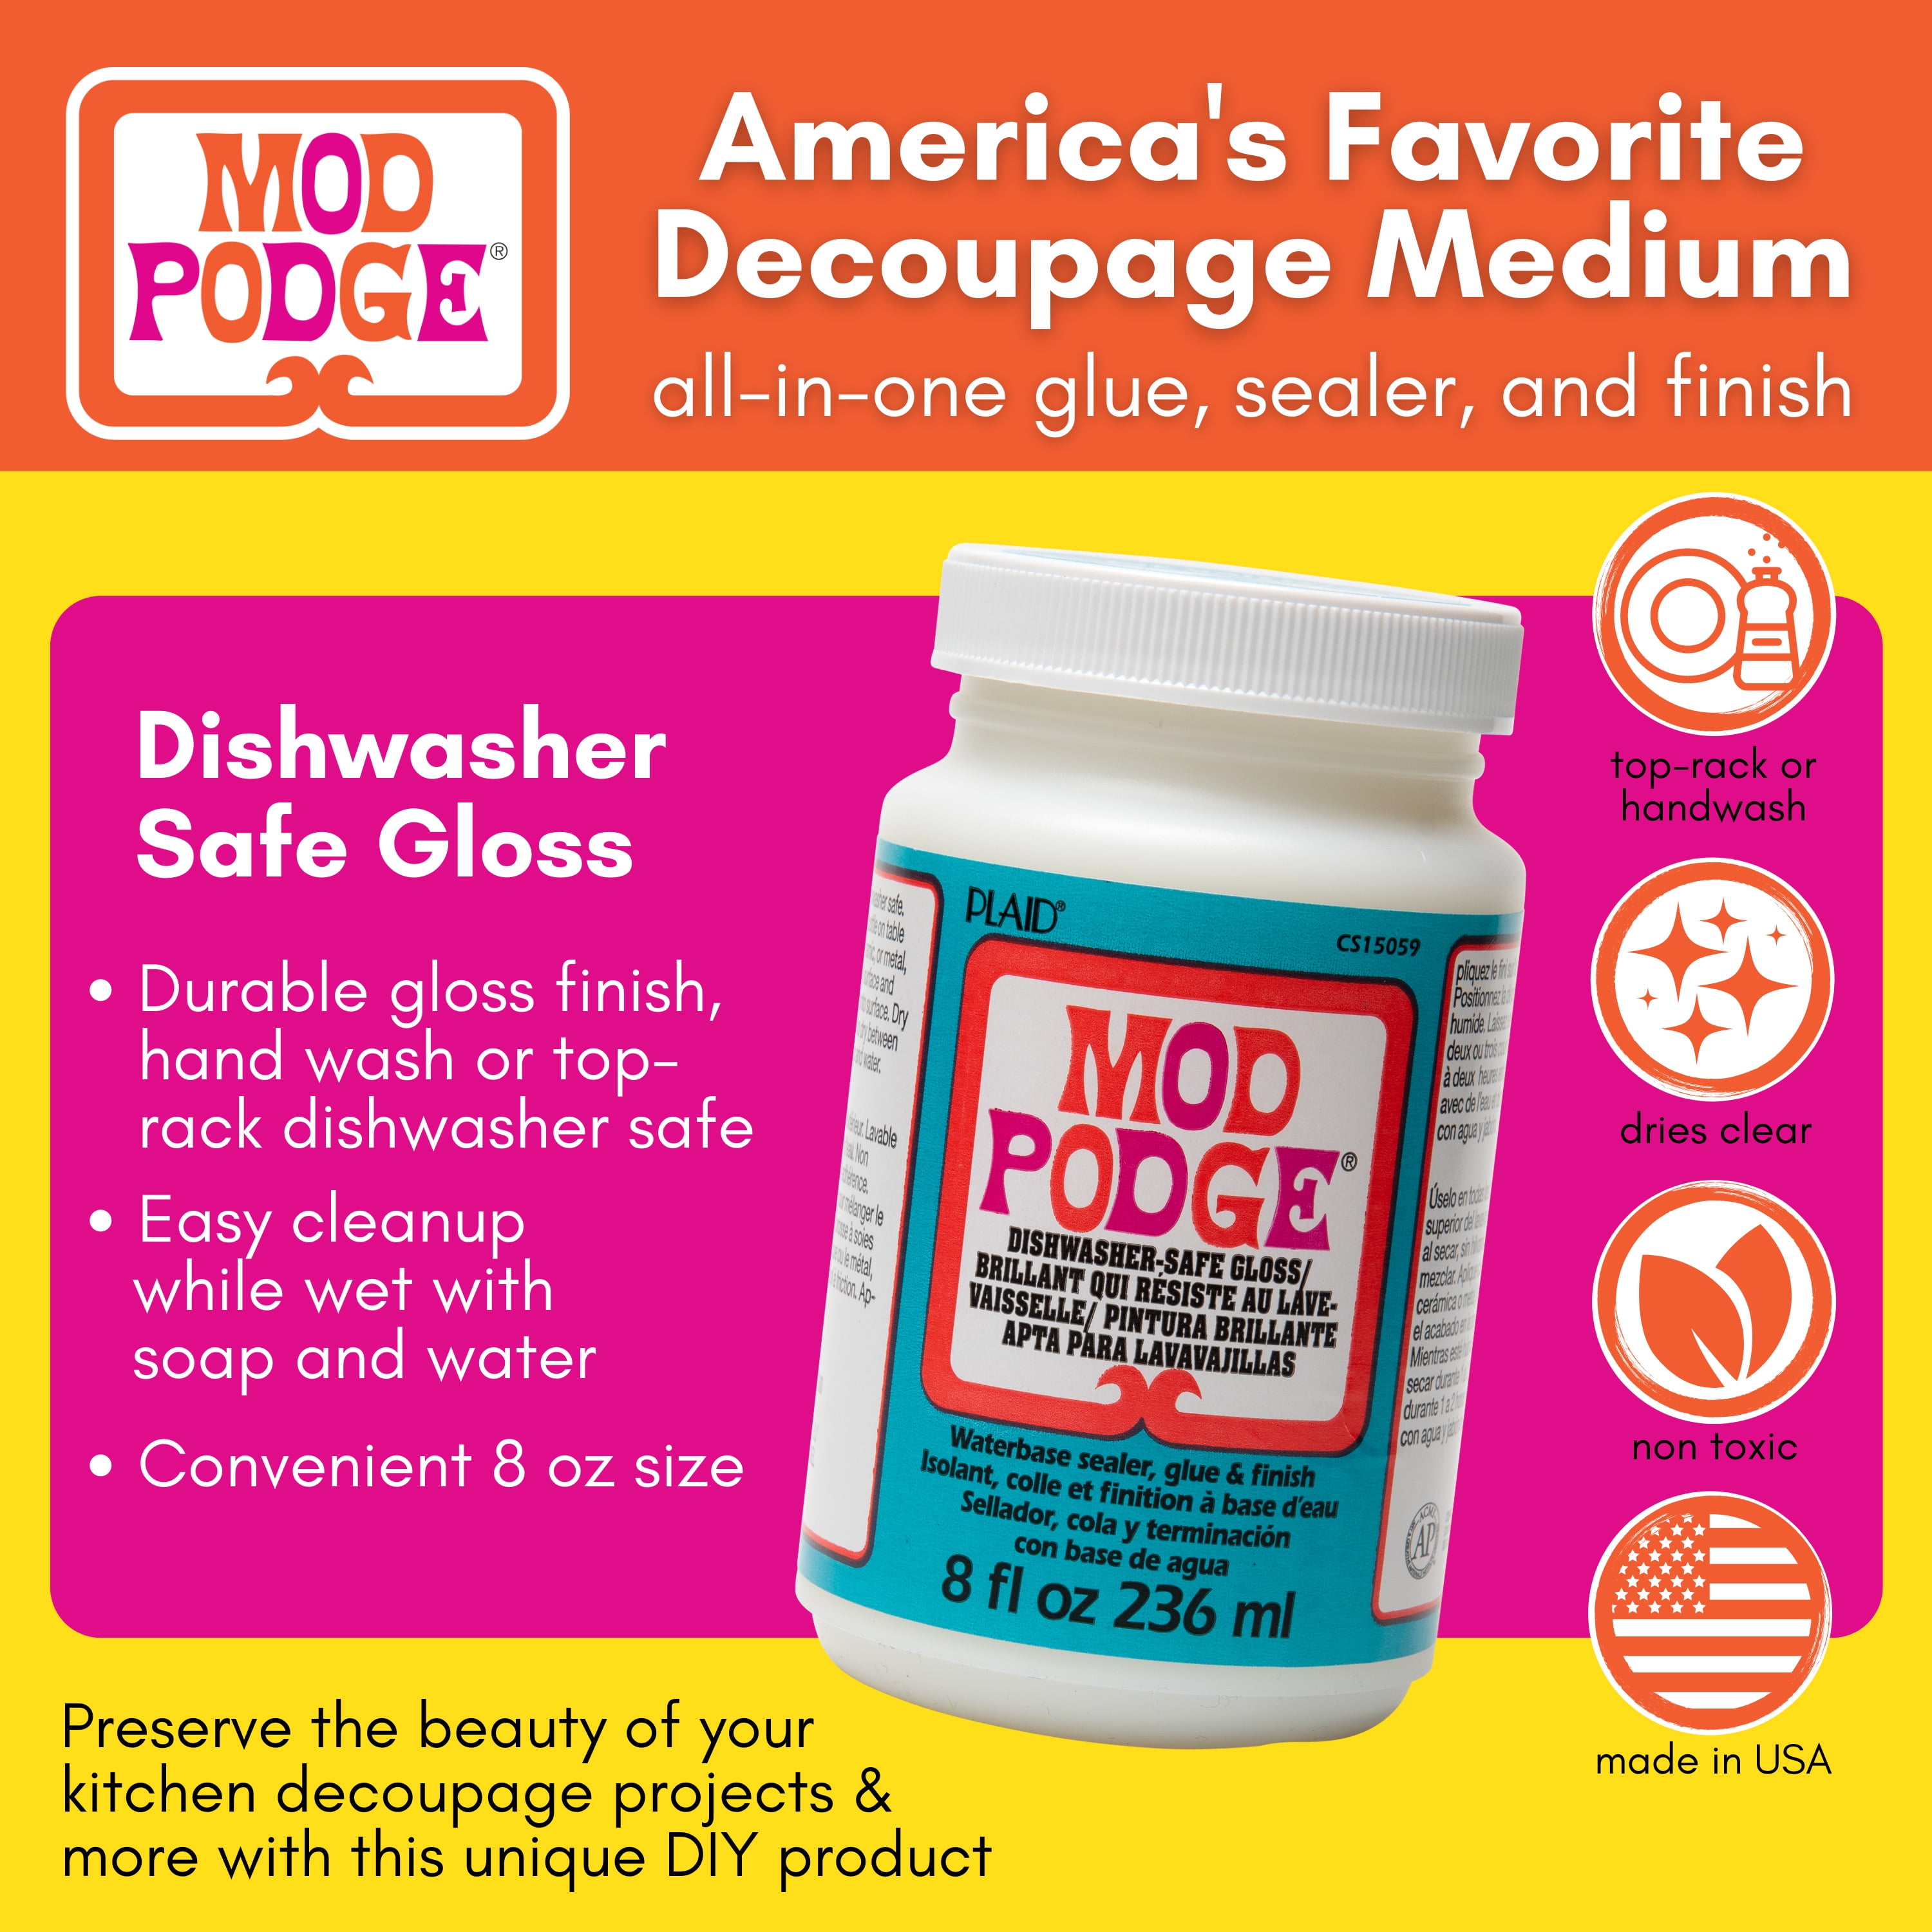 Mod Podge 8oz Craft Glue - Dishwasher Safe Gloss : Target